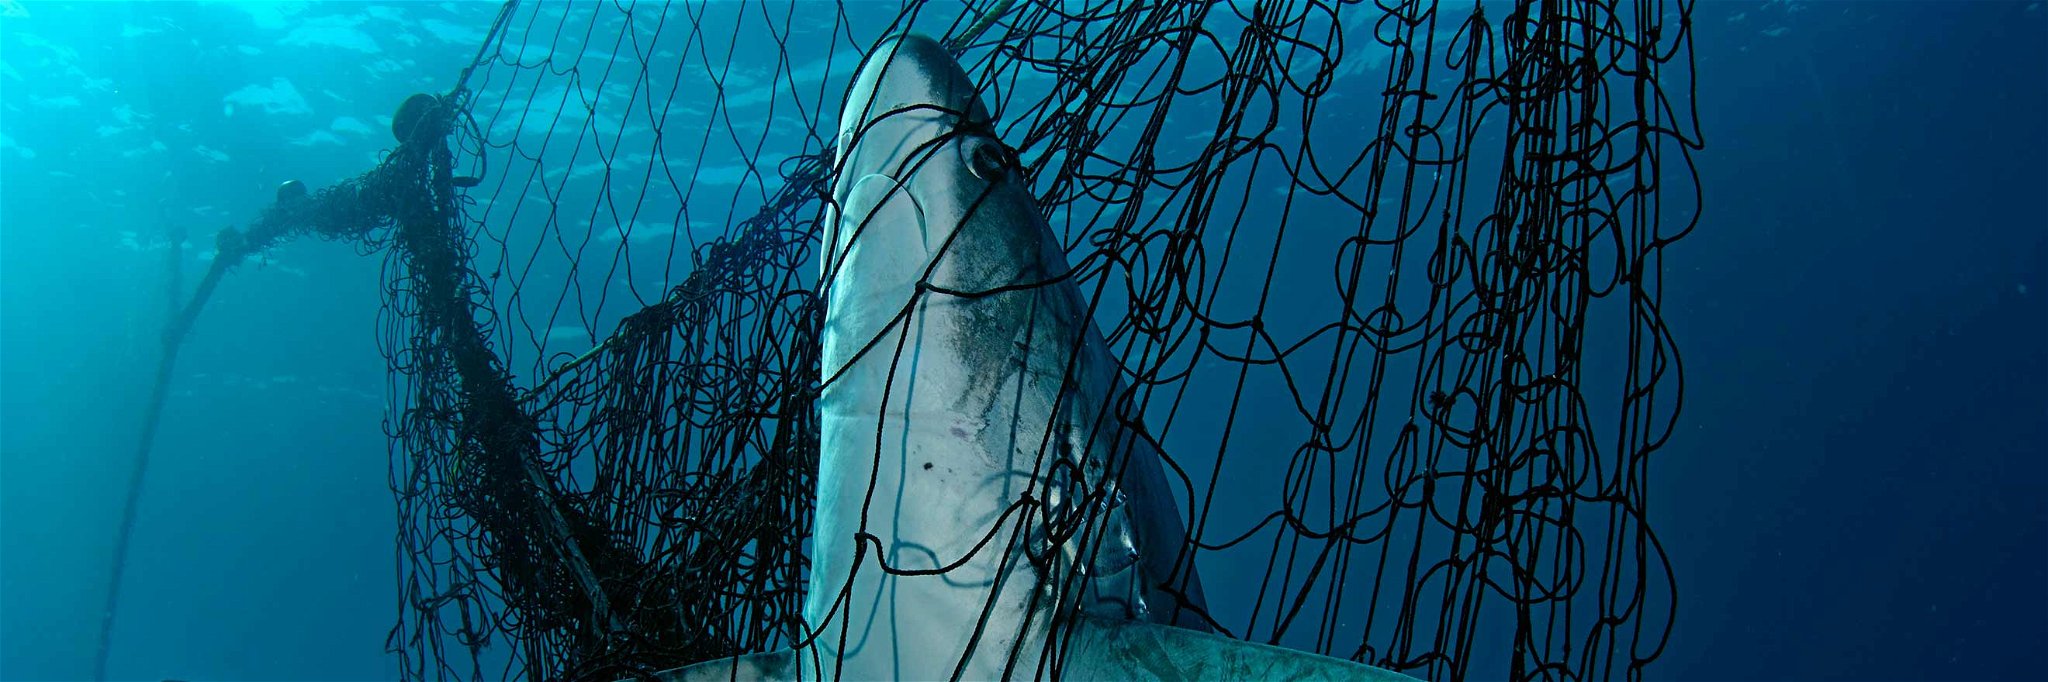 Haie zählen zu den akut bedrohten Arten. Im Urlaub landen sie allerdings oft illegal auf der Karte.